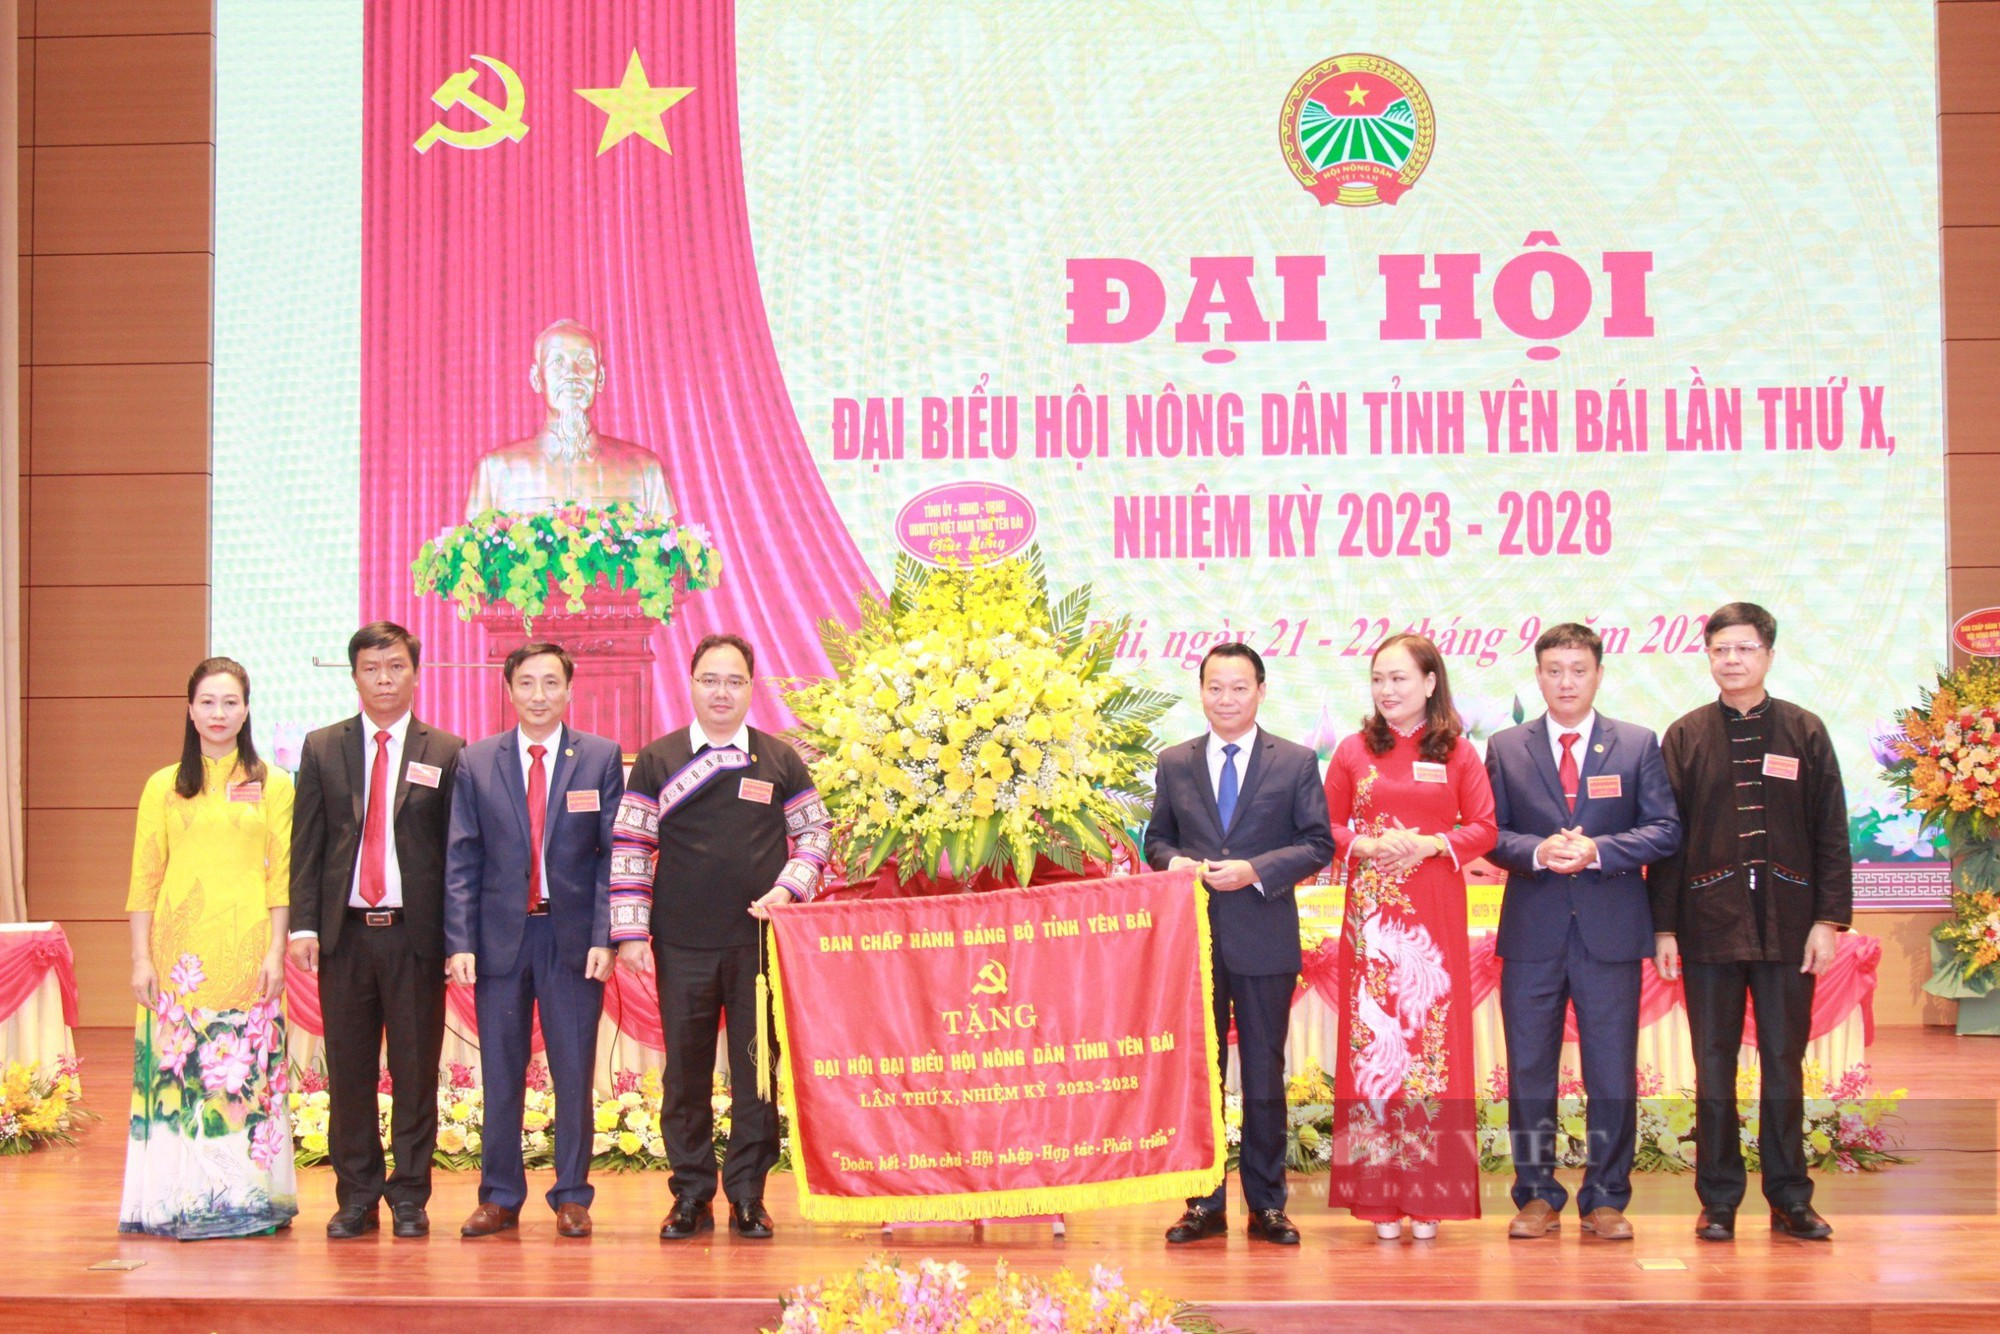 Phó Chủ tịch Hội NDVN Bùi Thị Thơm: Hội Nông dân Yên Bái vận động hội viên phát huy bản sắc dân tộc- Ảnh 5.